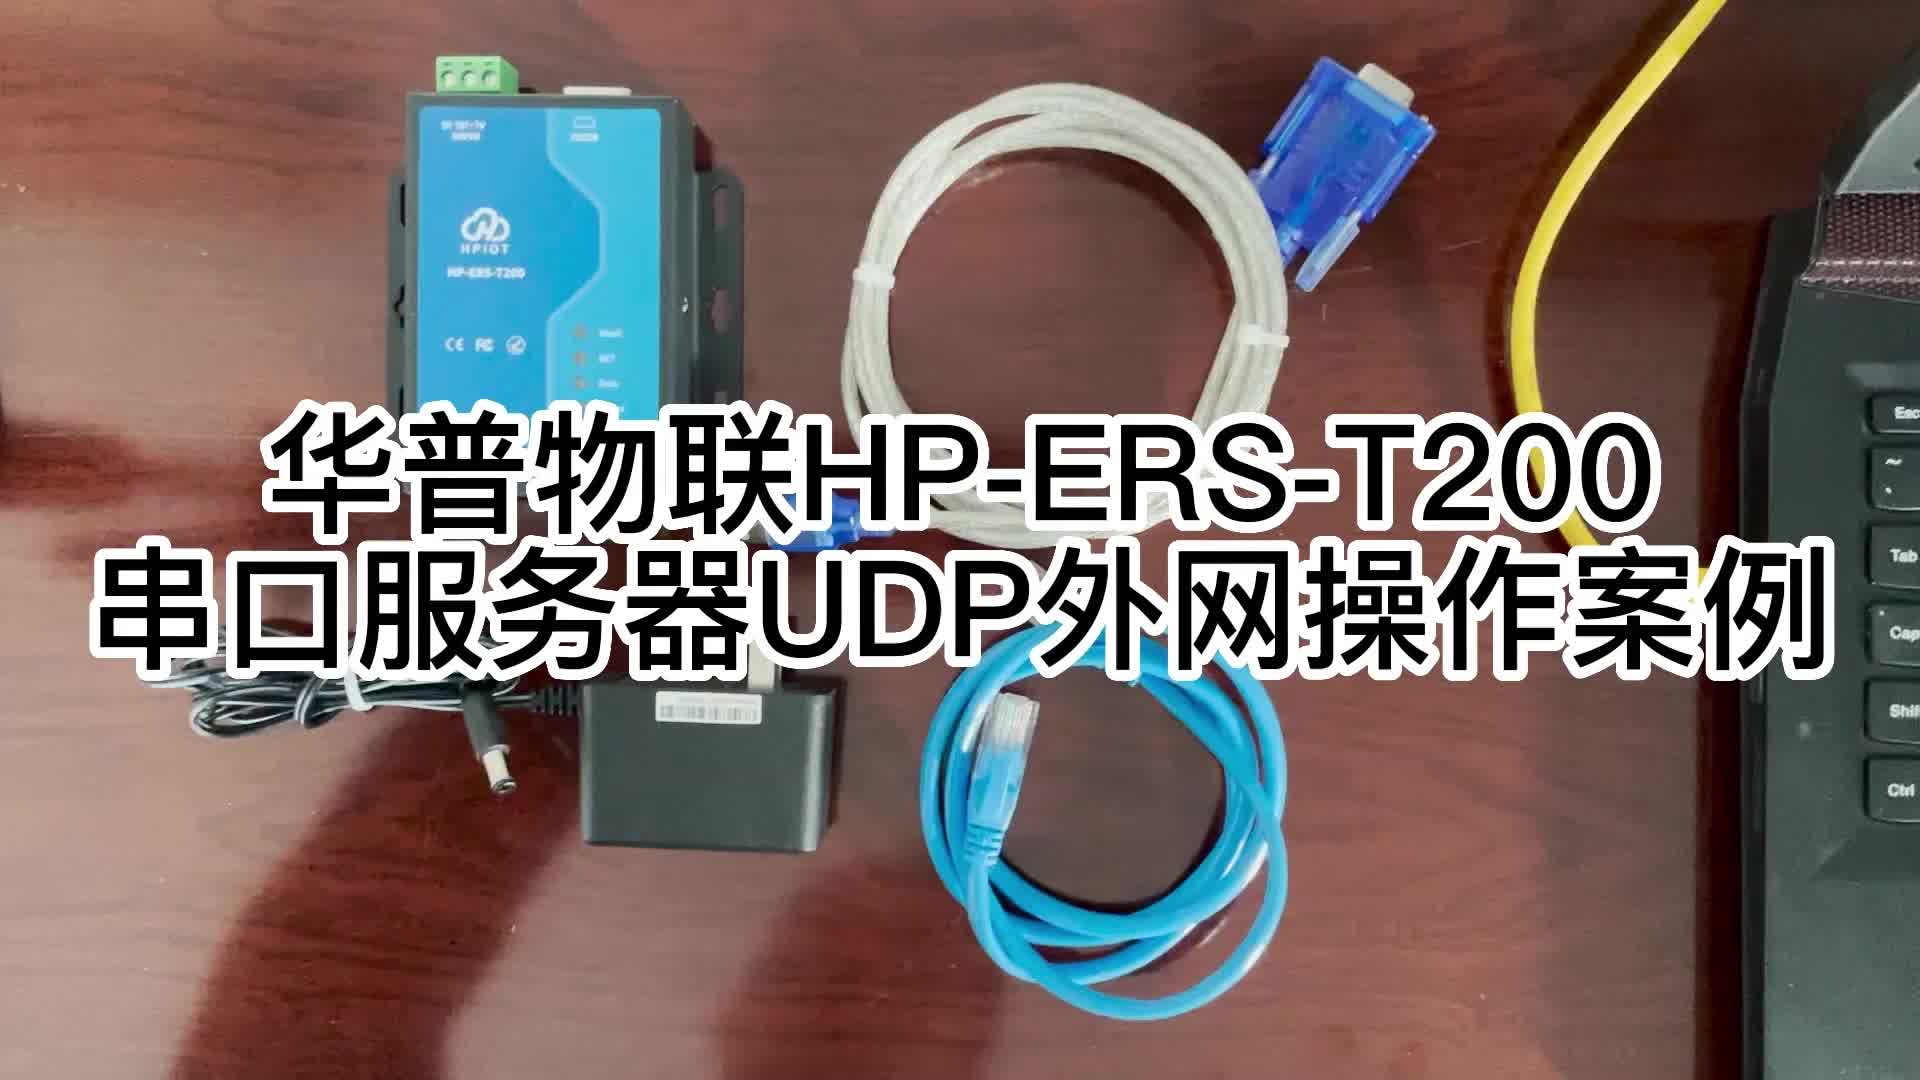 华普物联HP-ERS-T200串口服务器UDP外网操作案例4-1#串口通讯 #串口 